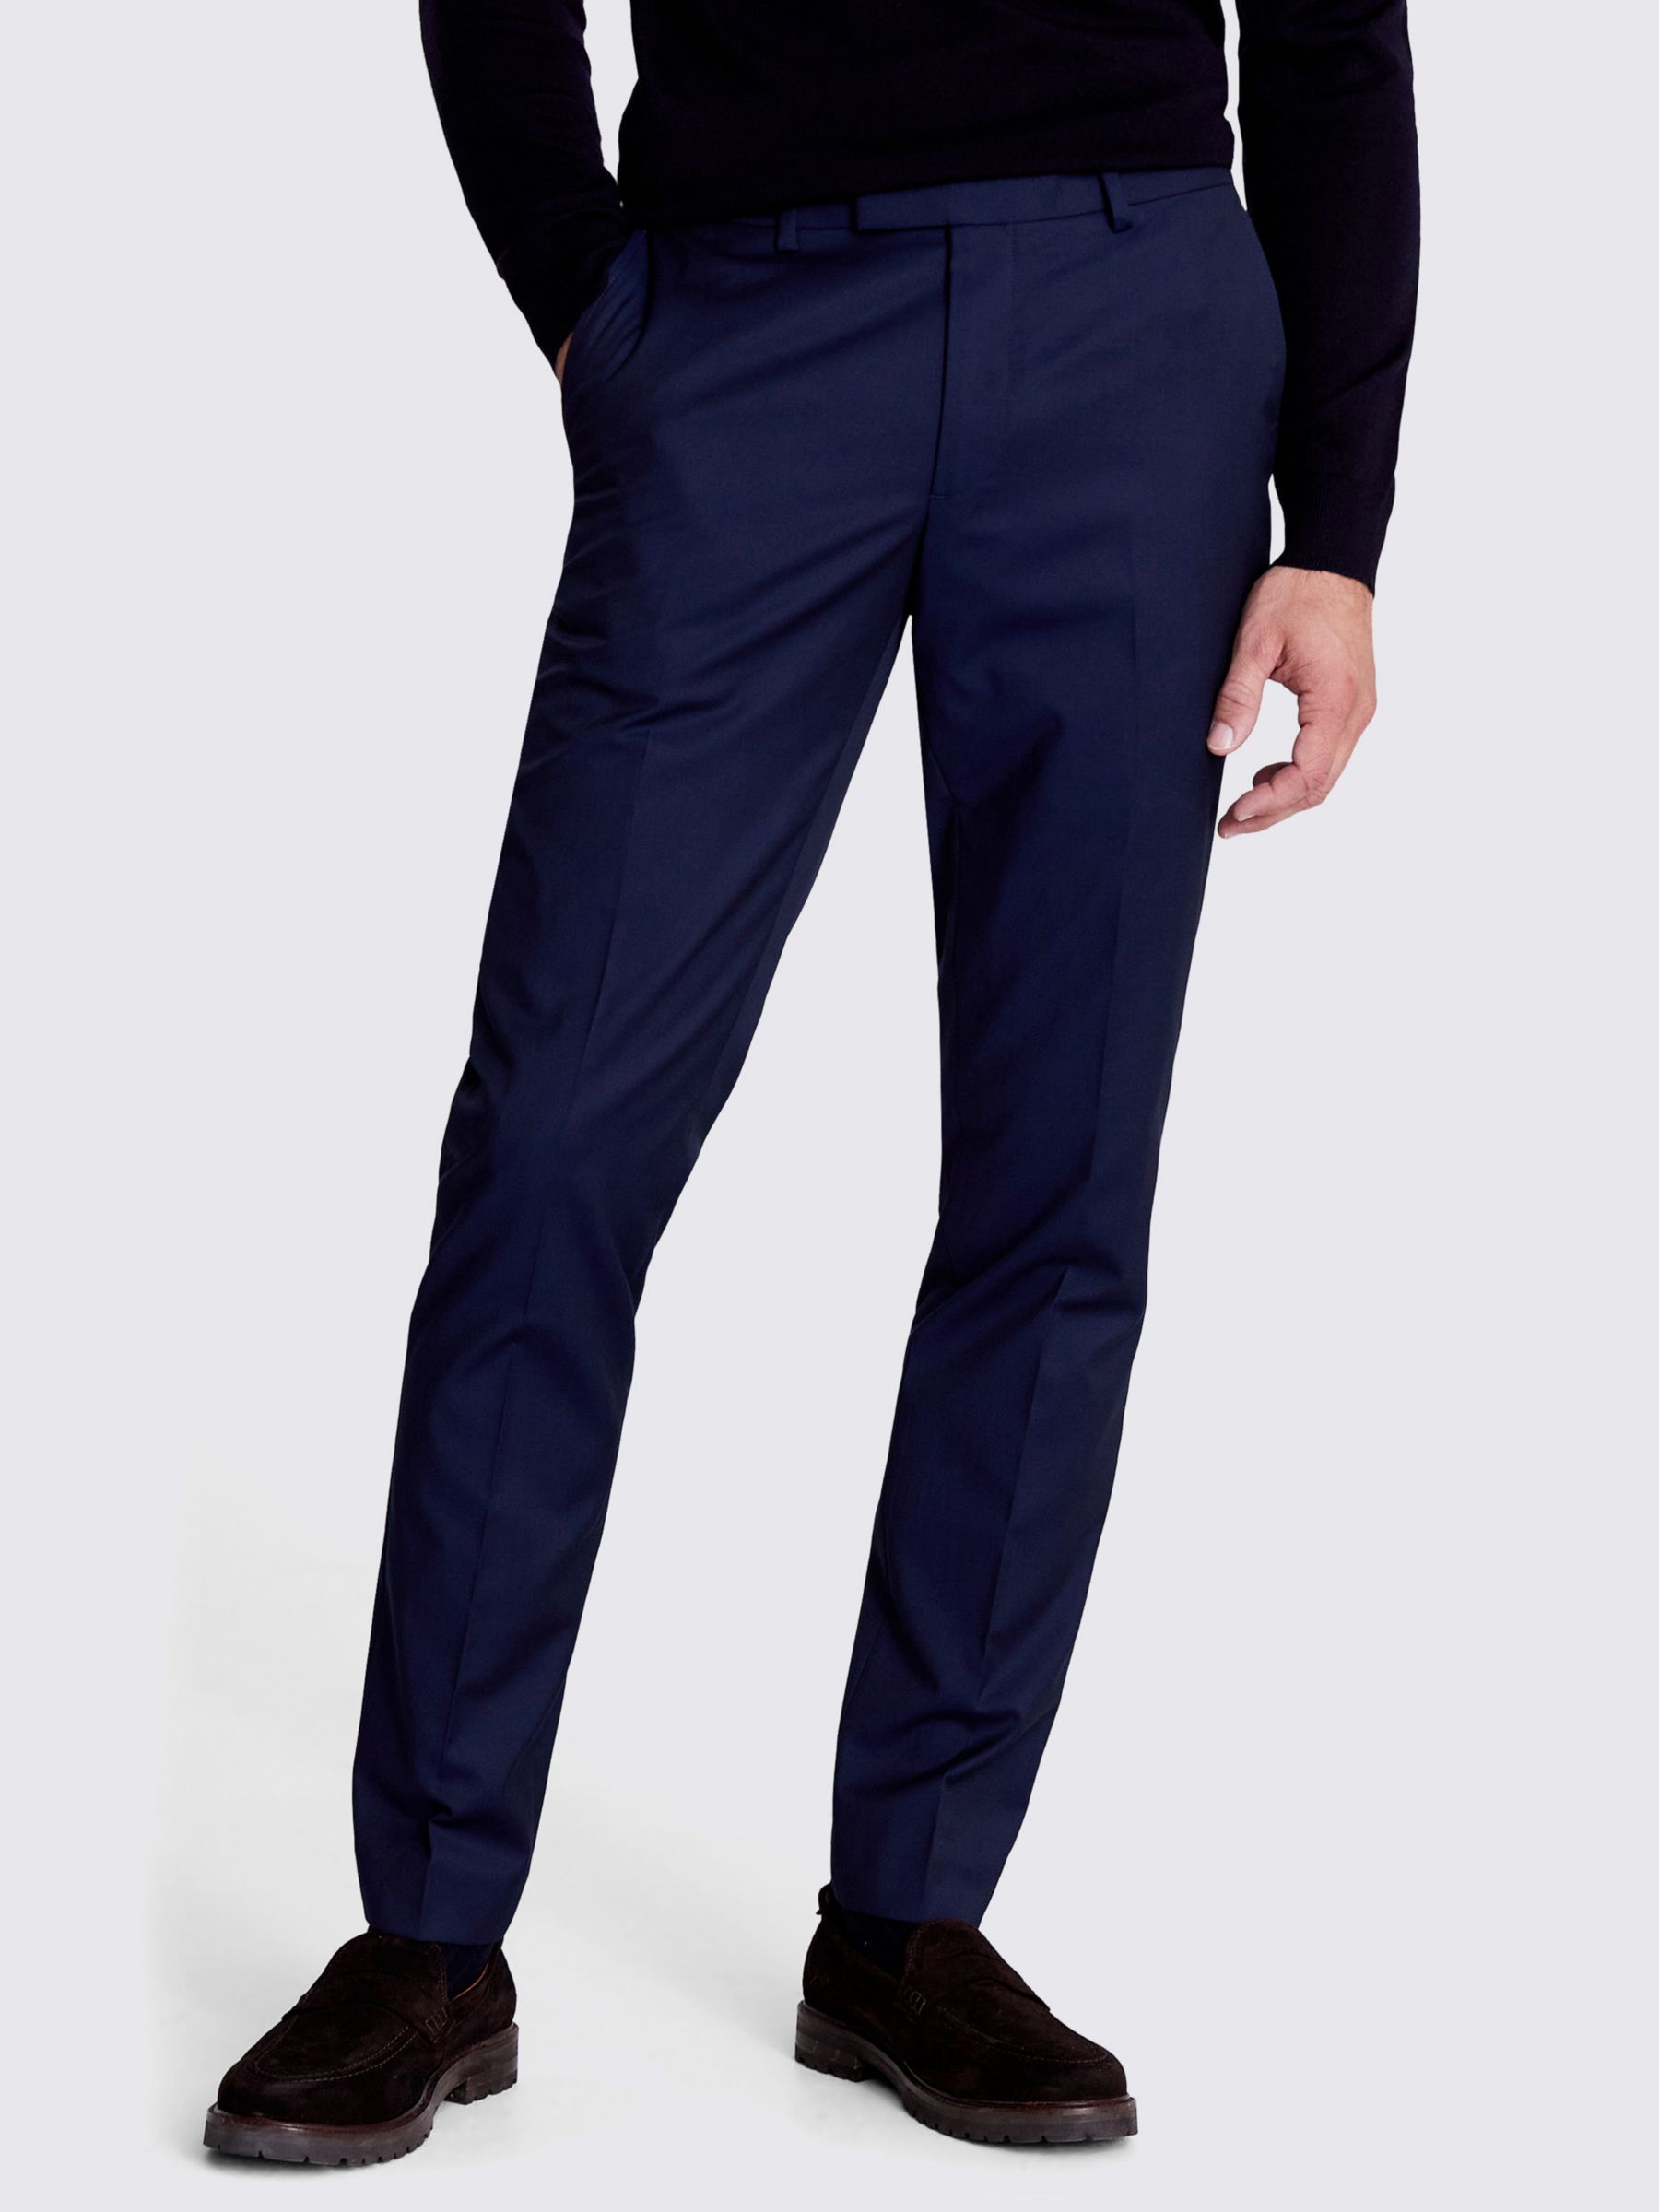 Men Sage Polyester Formal Trouser, Size: Large at Rs 250 in Bhilwara